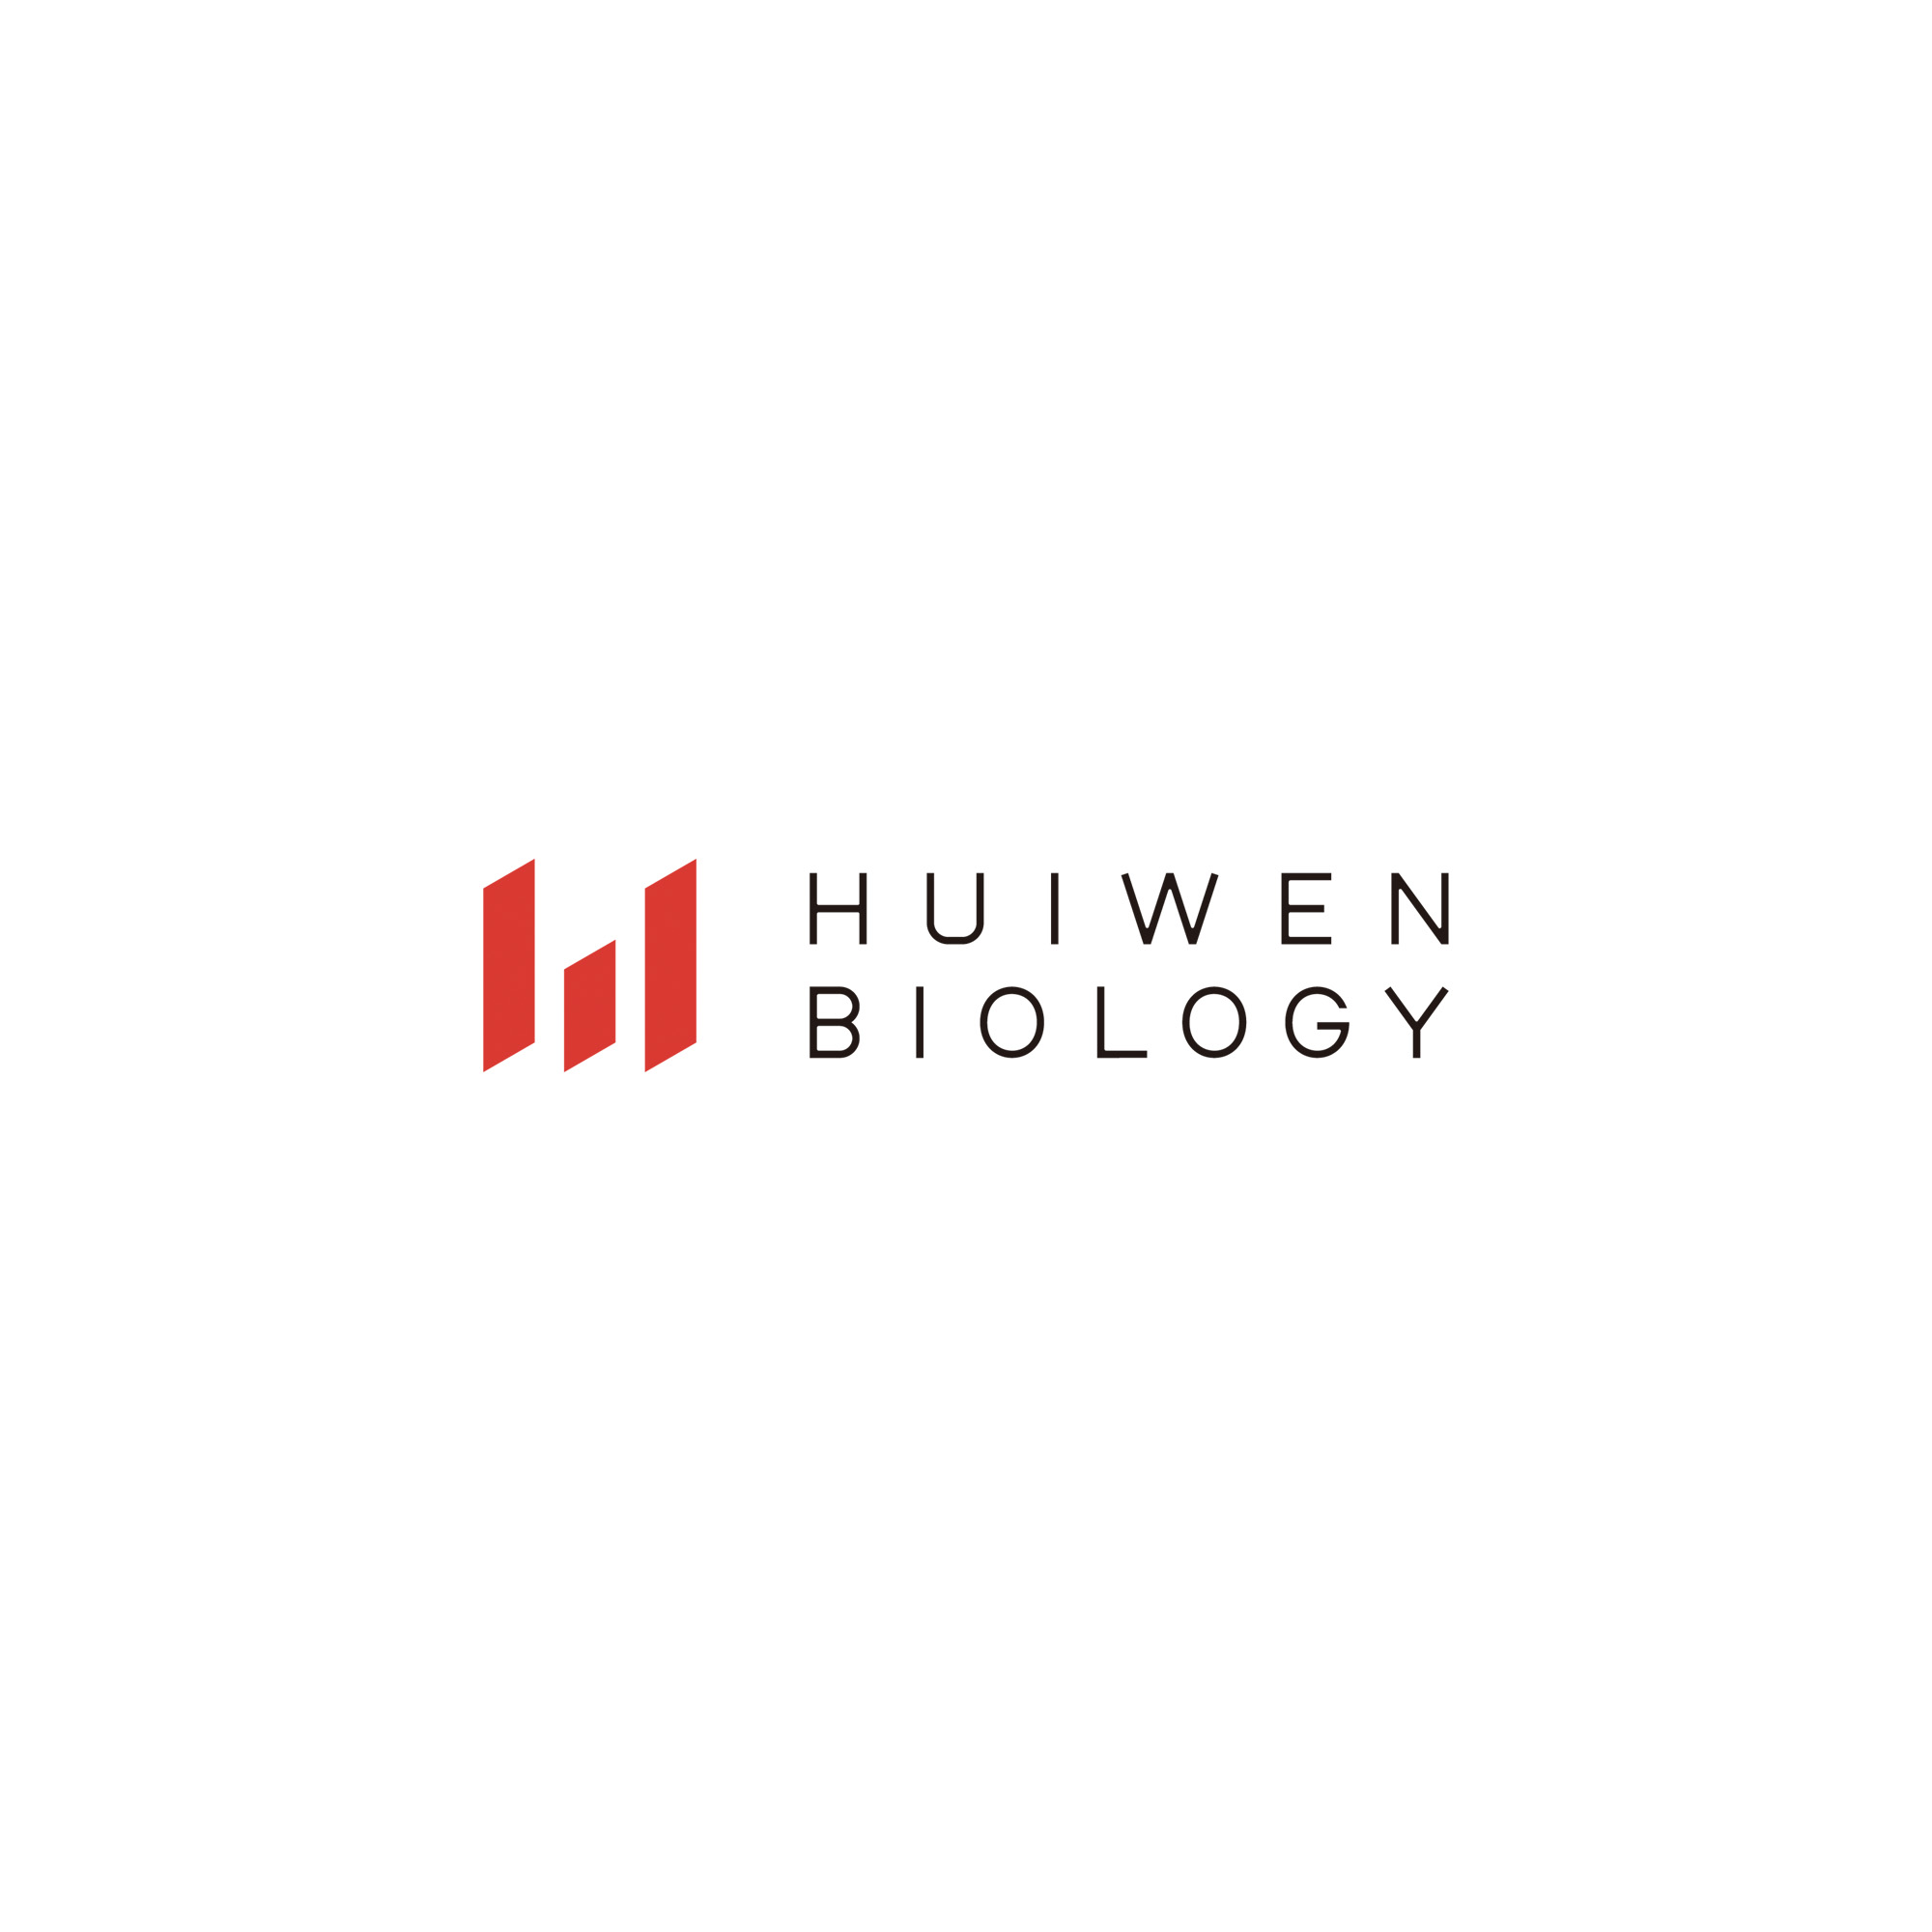 HUIWEN BIOLOGY logo